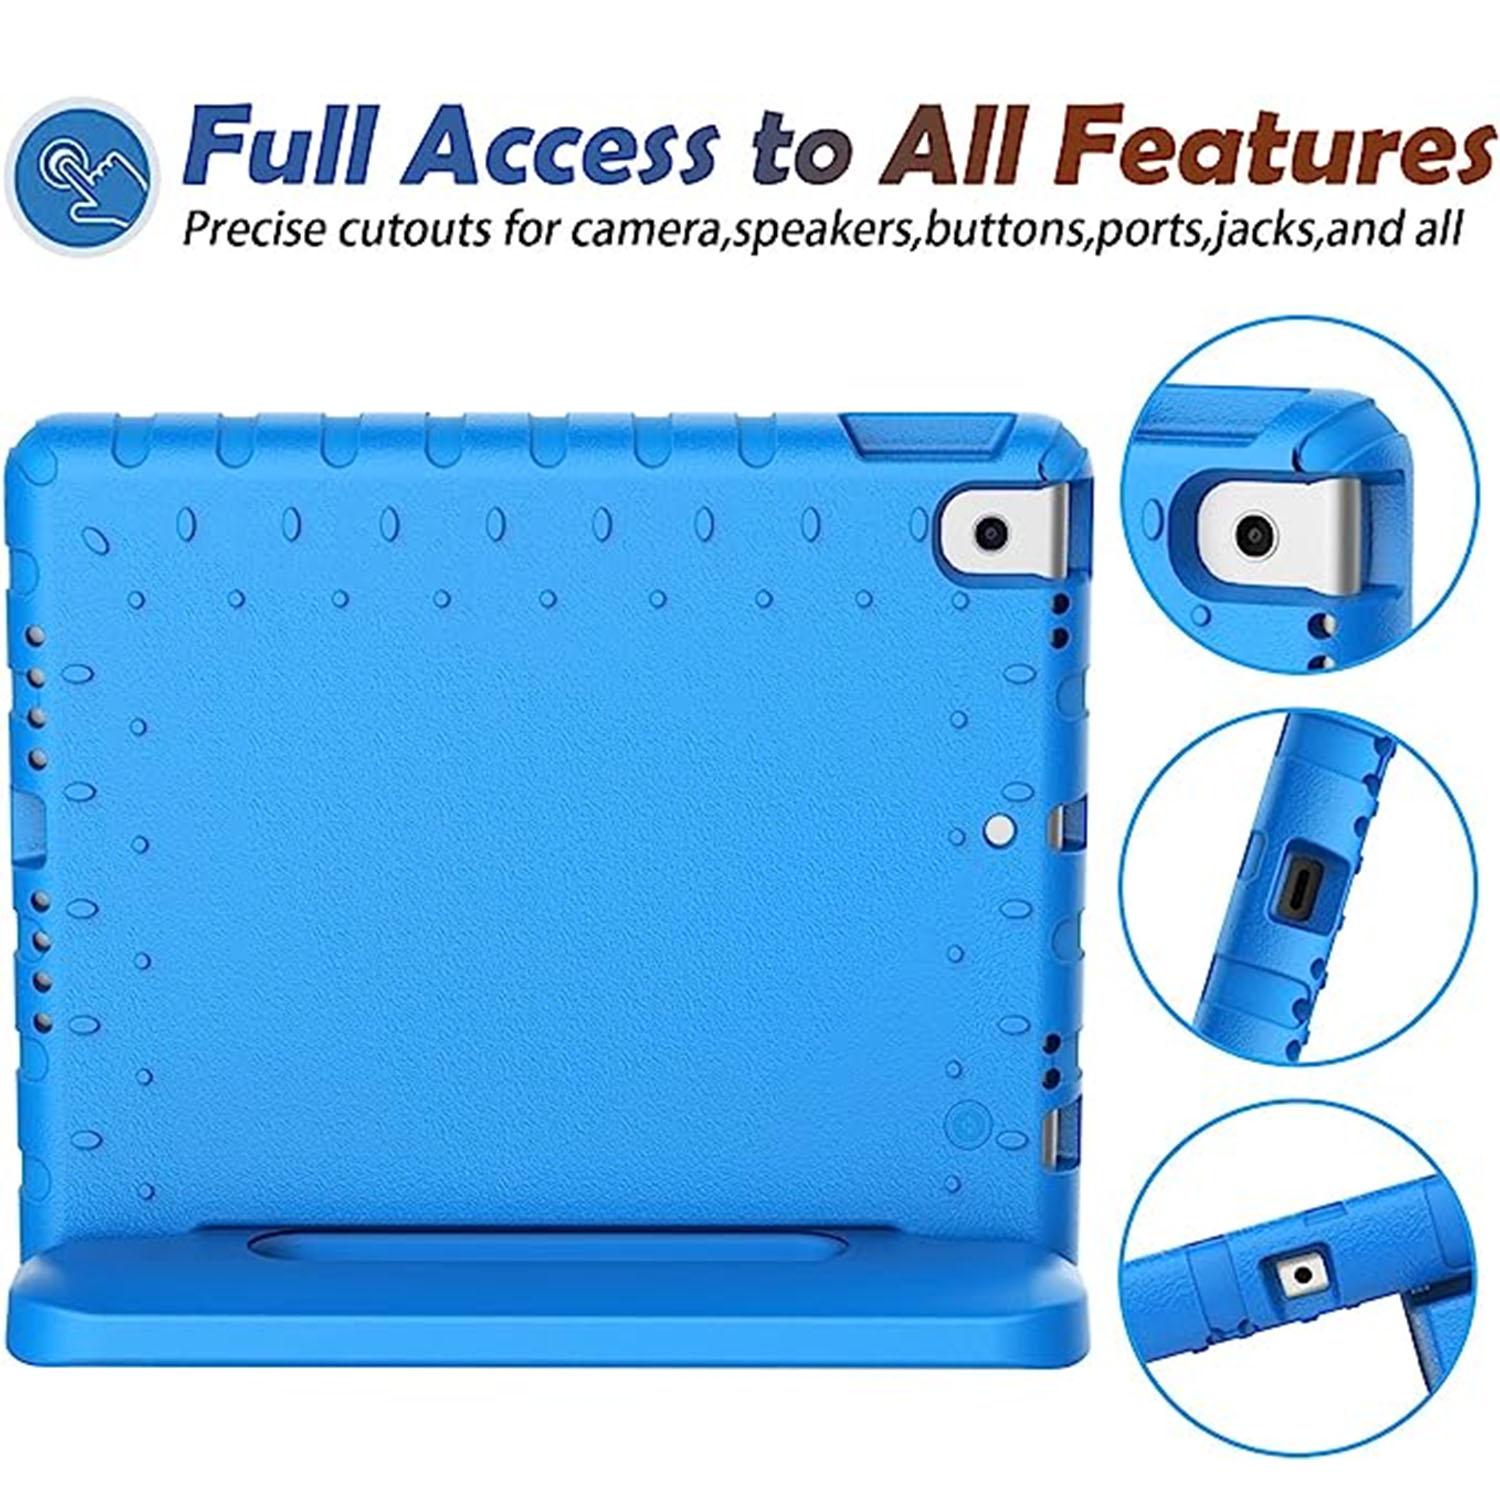 Stødsikker EVA Cover iPad 10.2 8th Gen (2020) blå